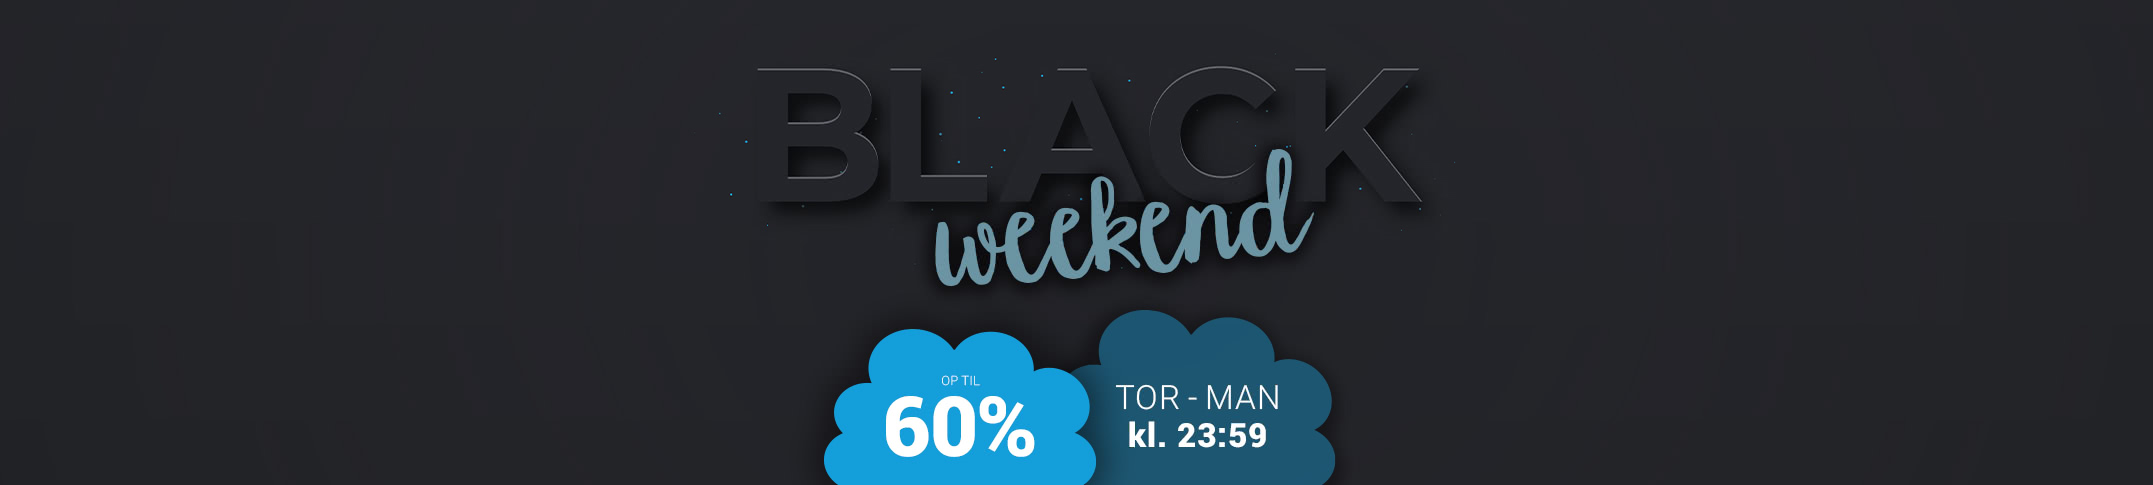 Black-Weekend